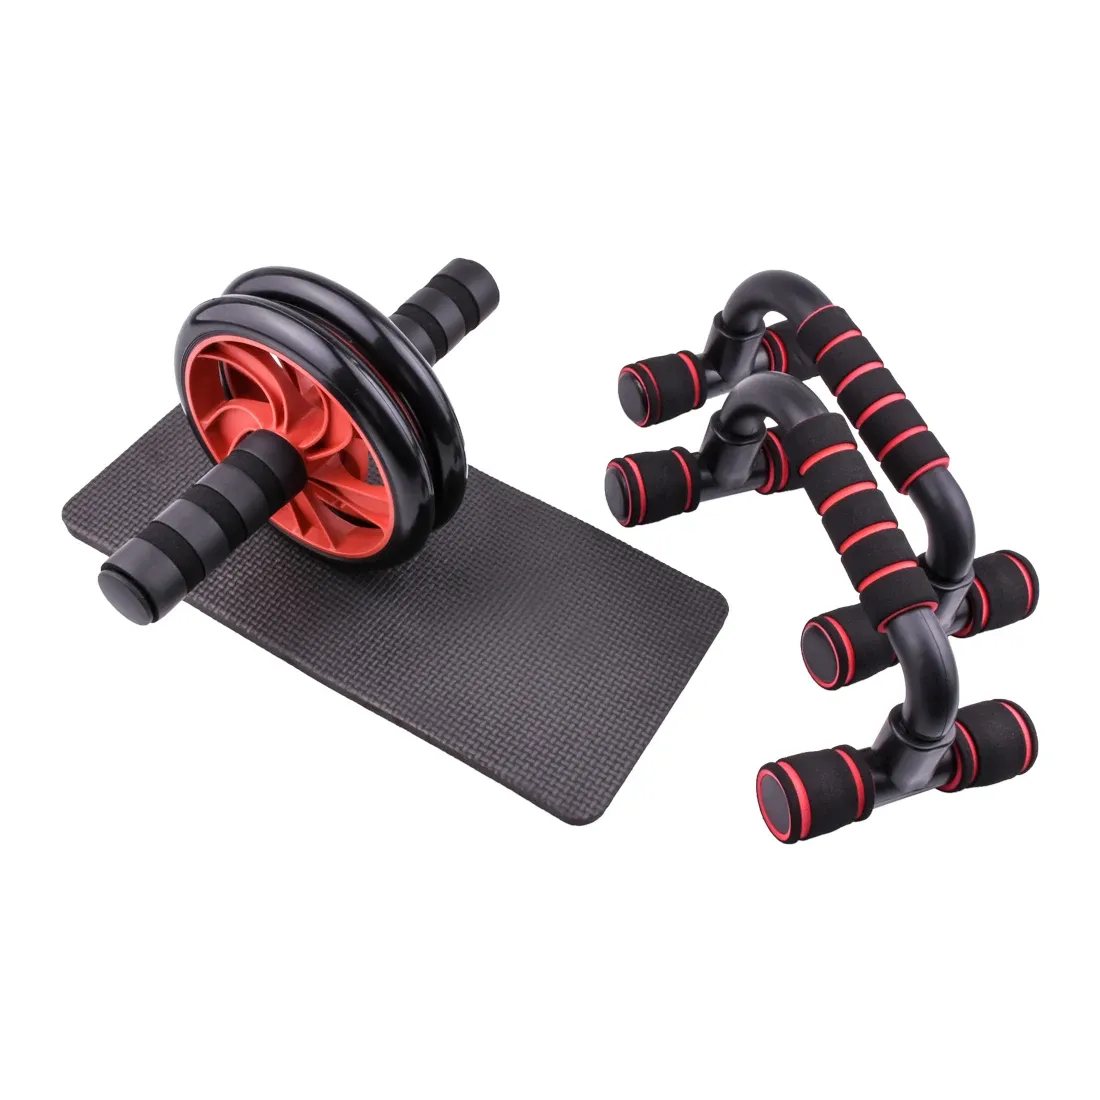 Ausrüstungen AB Power Wheels Roller Machine Pushup Bar Stand Training Rack Workout Home Fitness Ausrüstung Abdominalmuskel Trainer